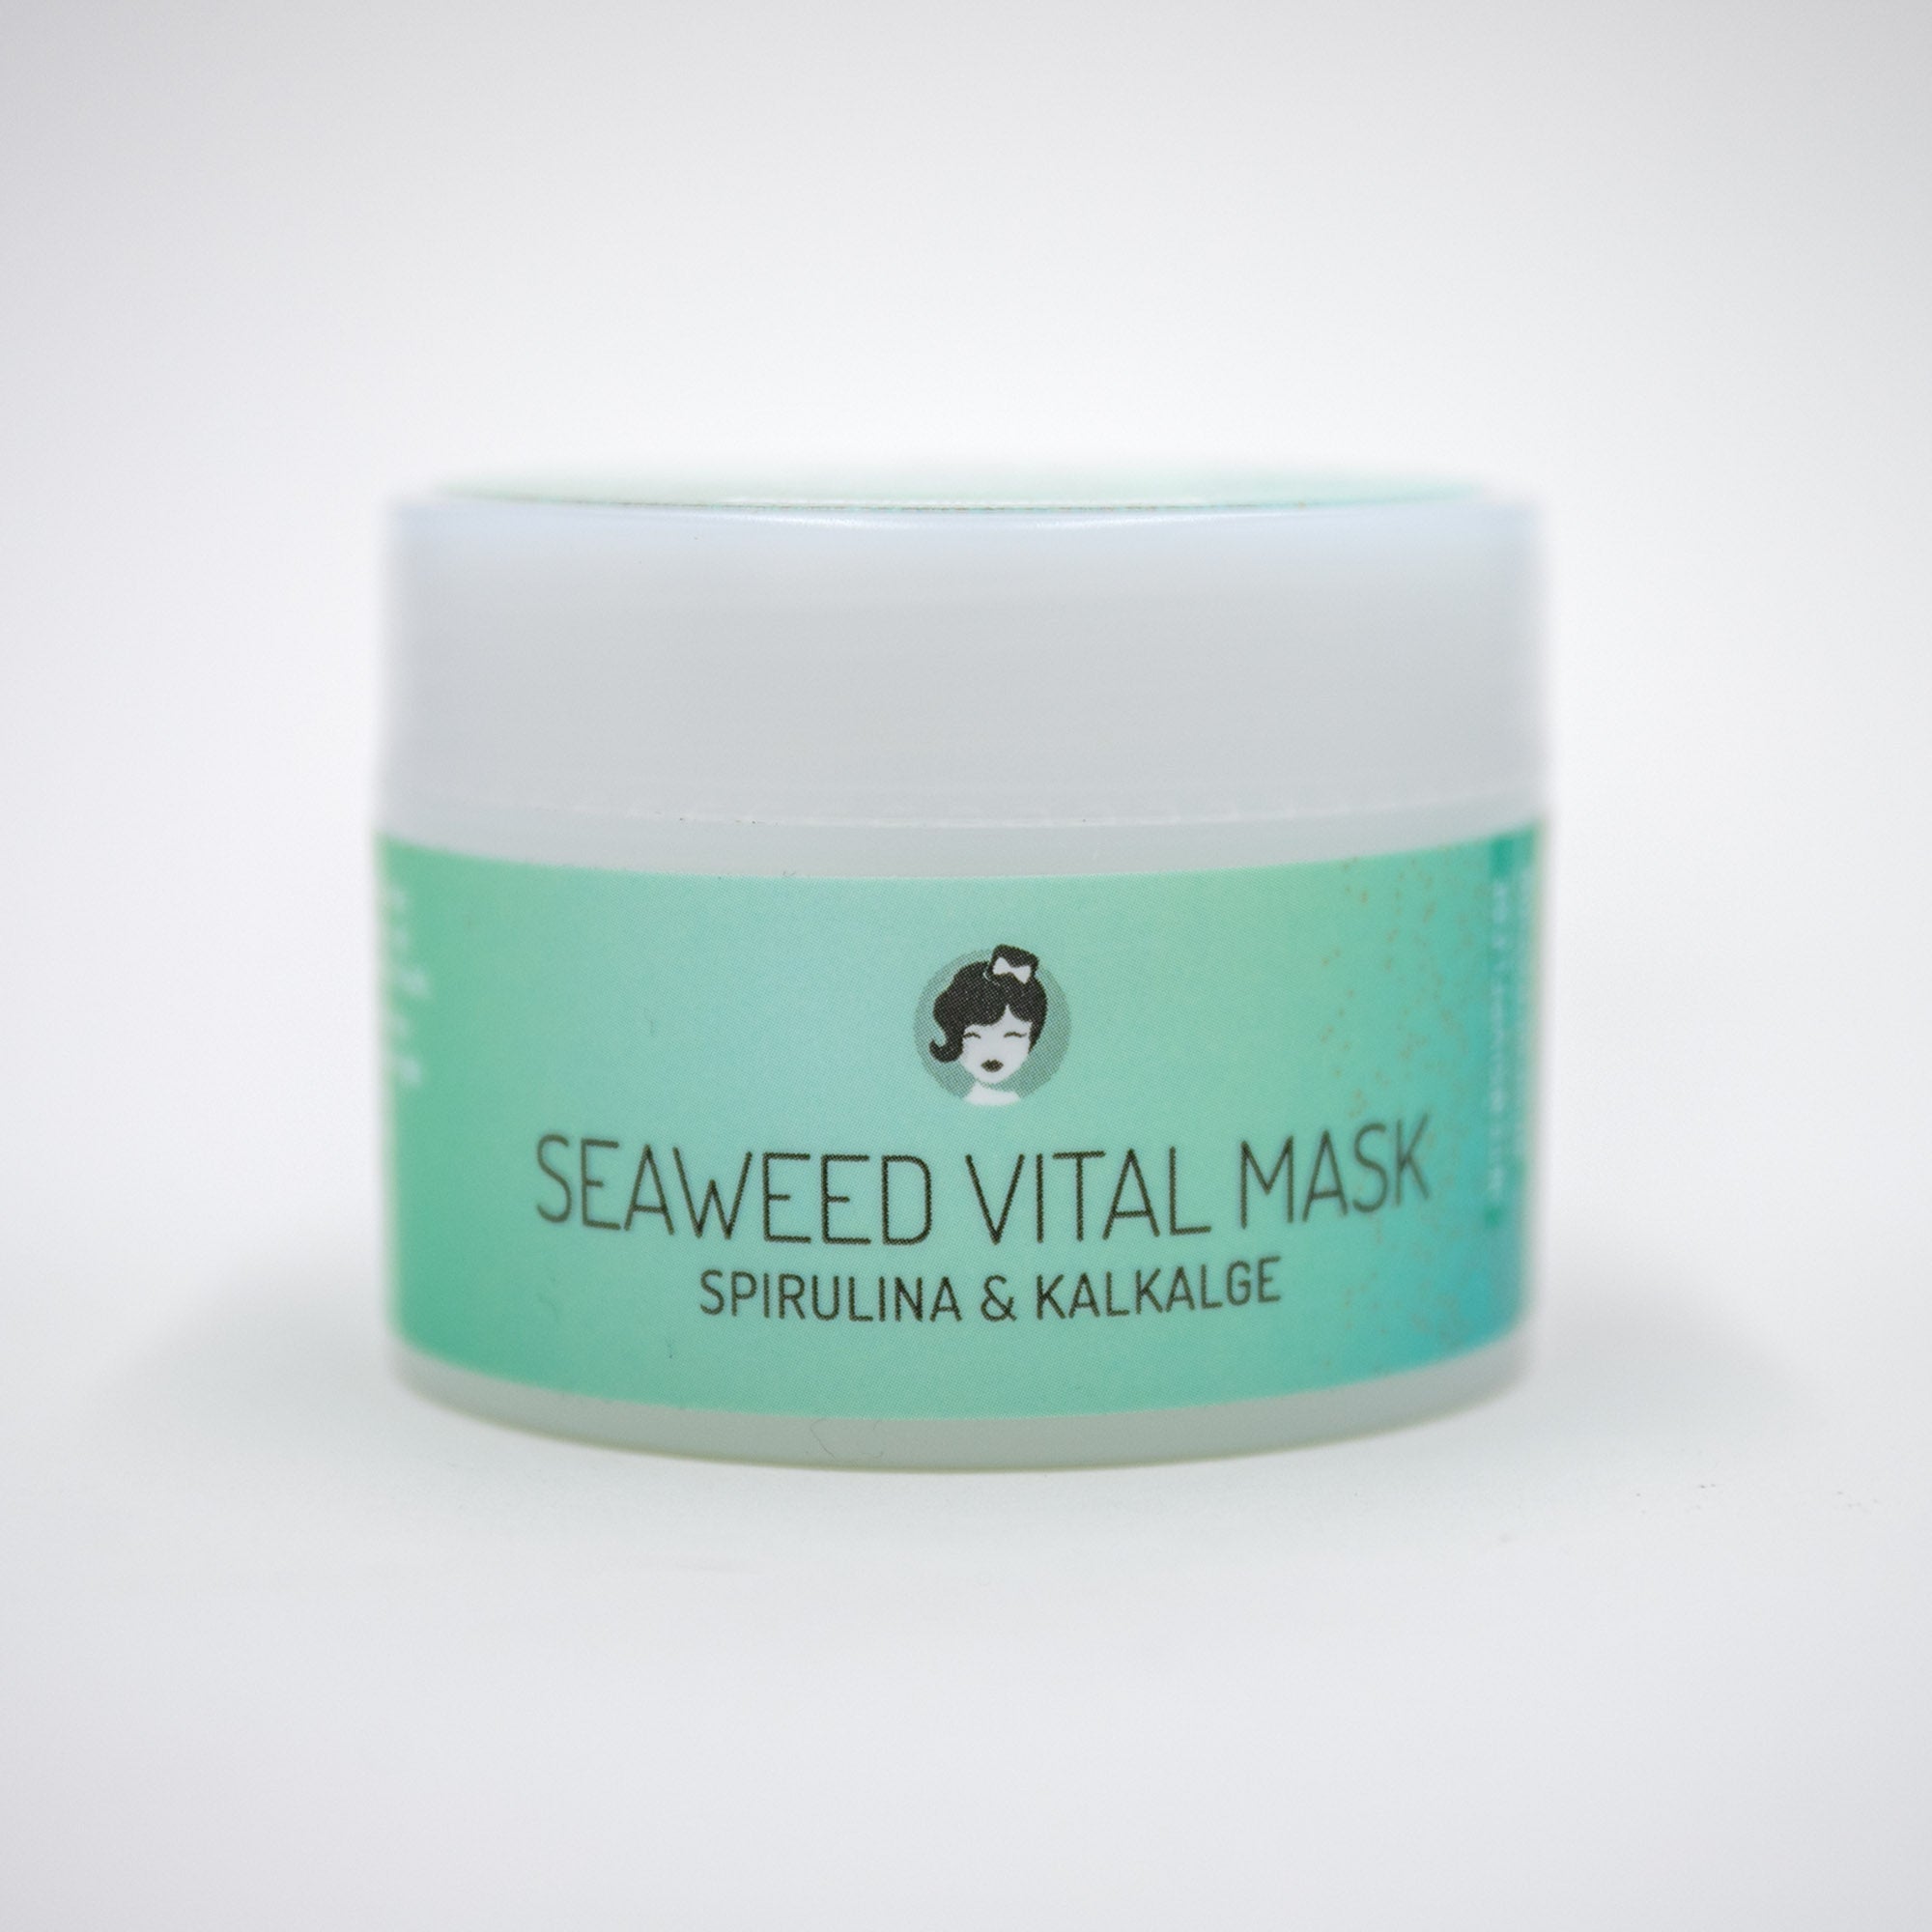 Seaweed Vital Mask